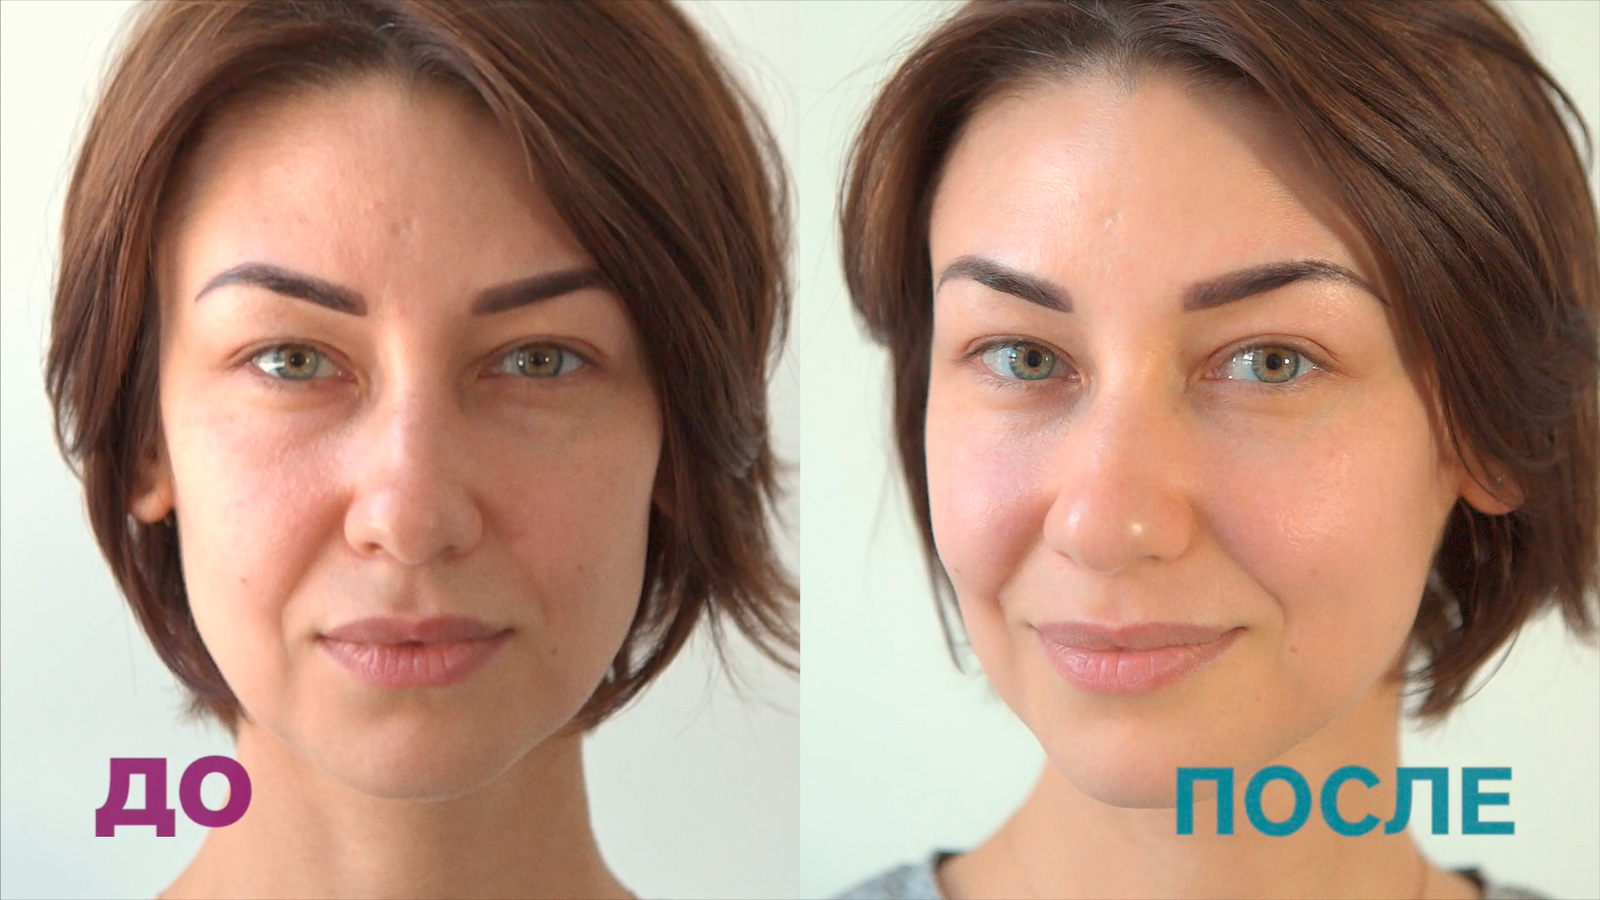 Подает лицо. Микротоки для лица до и после. Микротоковая терапия до и после. Массаж лица до и после. Микротоковая терапия для лица до и после.